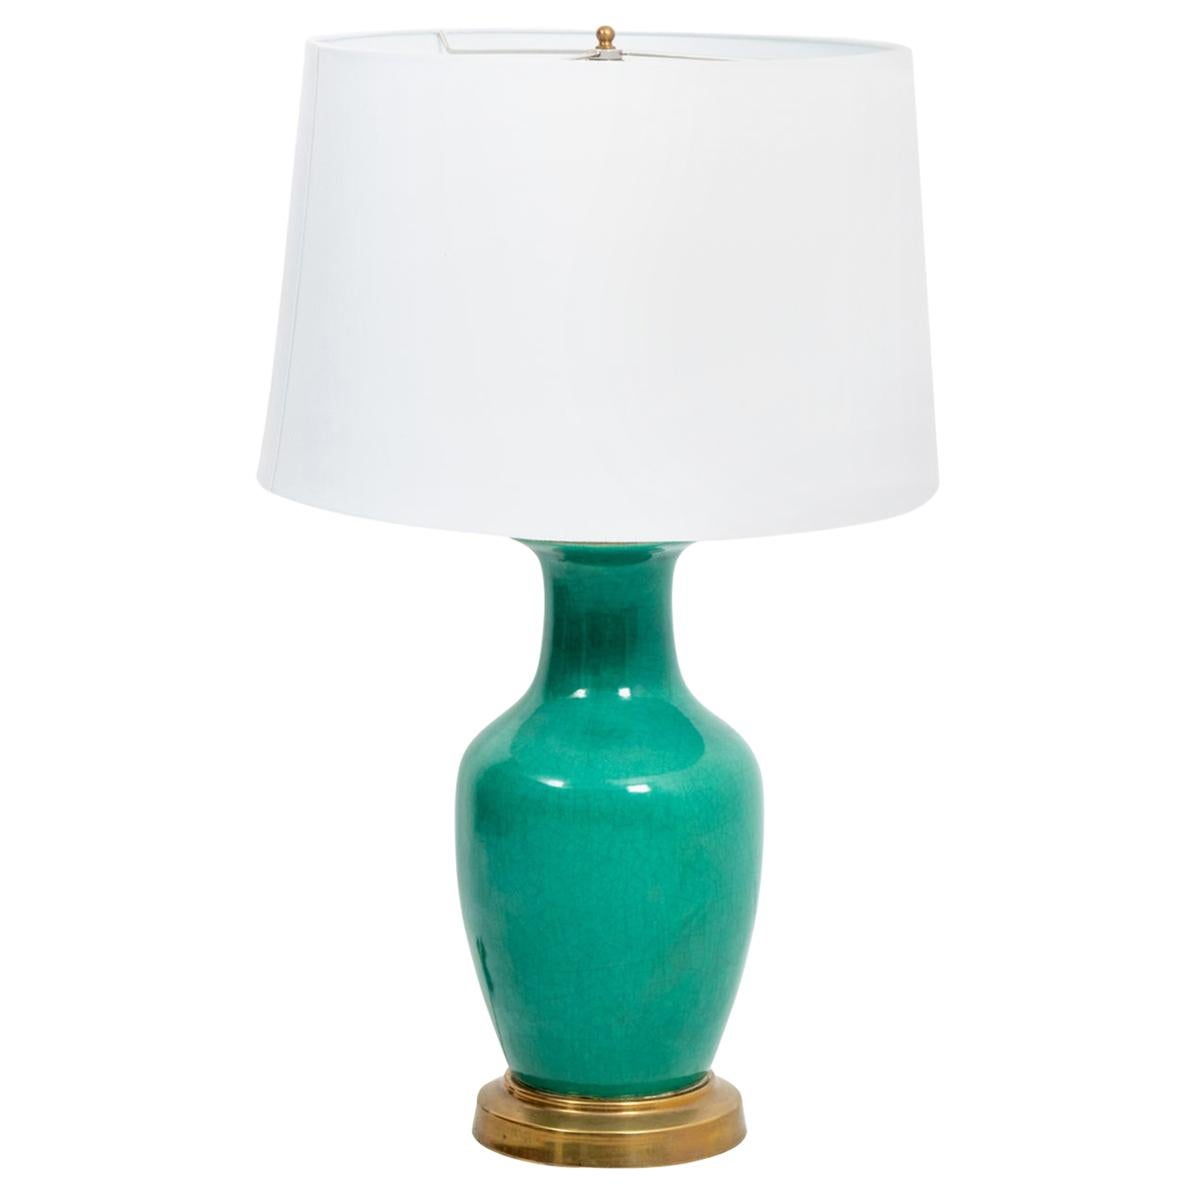 Green Ceramic Vase Lamp